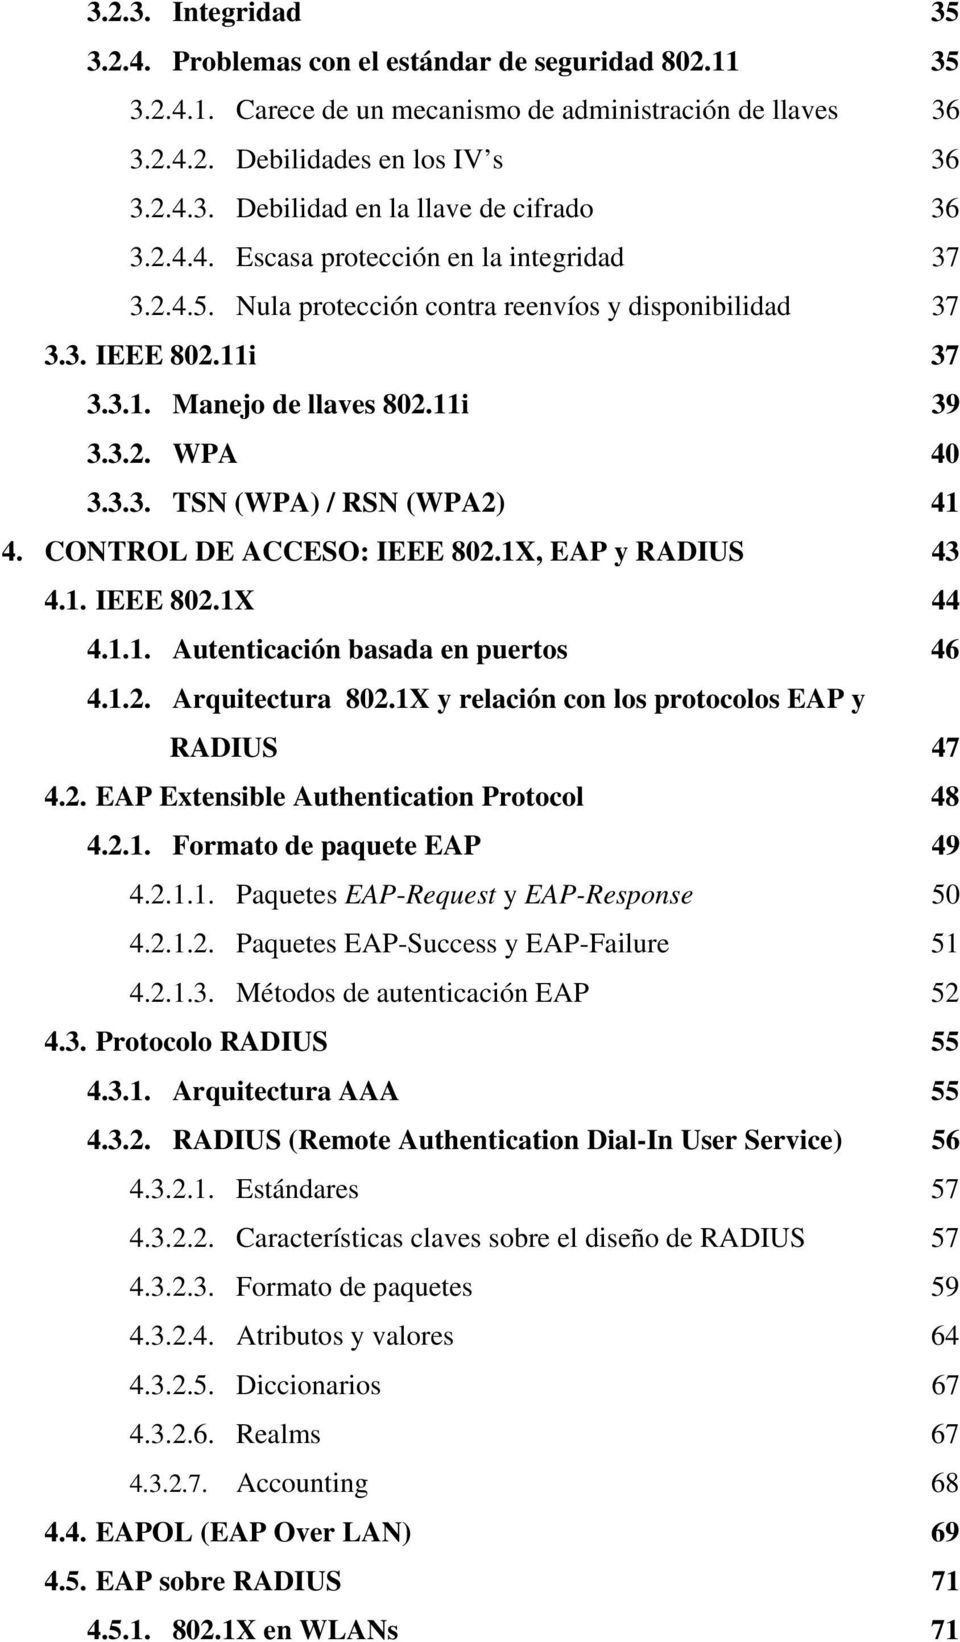 CONTROL DE ACCESO: IEEE 802.1X, EAP y RADIUS 43 4.1. IEEE 802.1X 44 4.1.1. Autenticación basada en puertos 46 4.1.2. Arquitectura 802.1X y relación con los protocolos EAP y RADIUS 47 4.2. EAP Extensible Authentication Protocol 48 4.